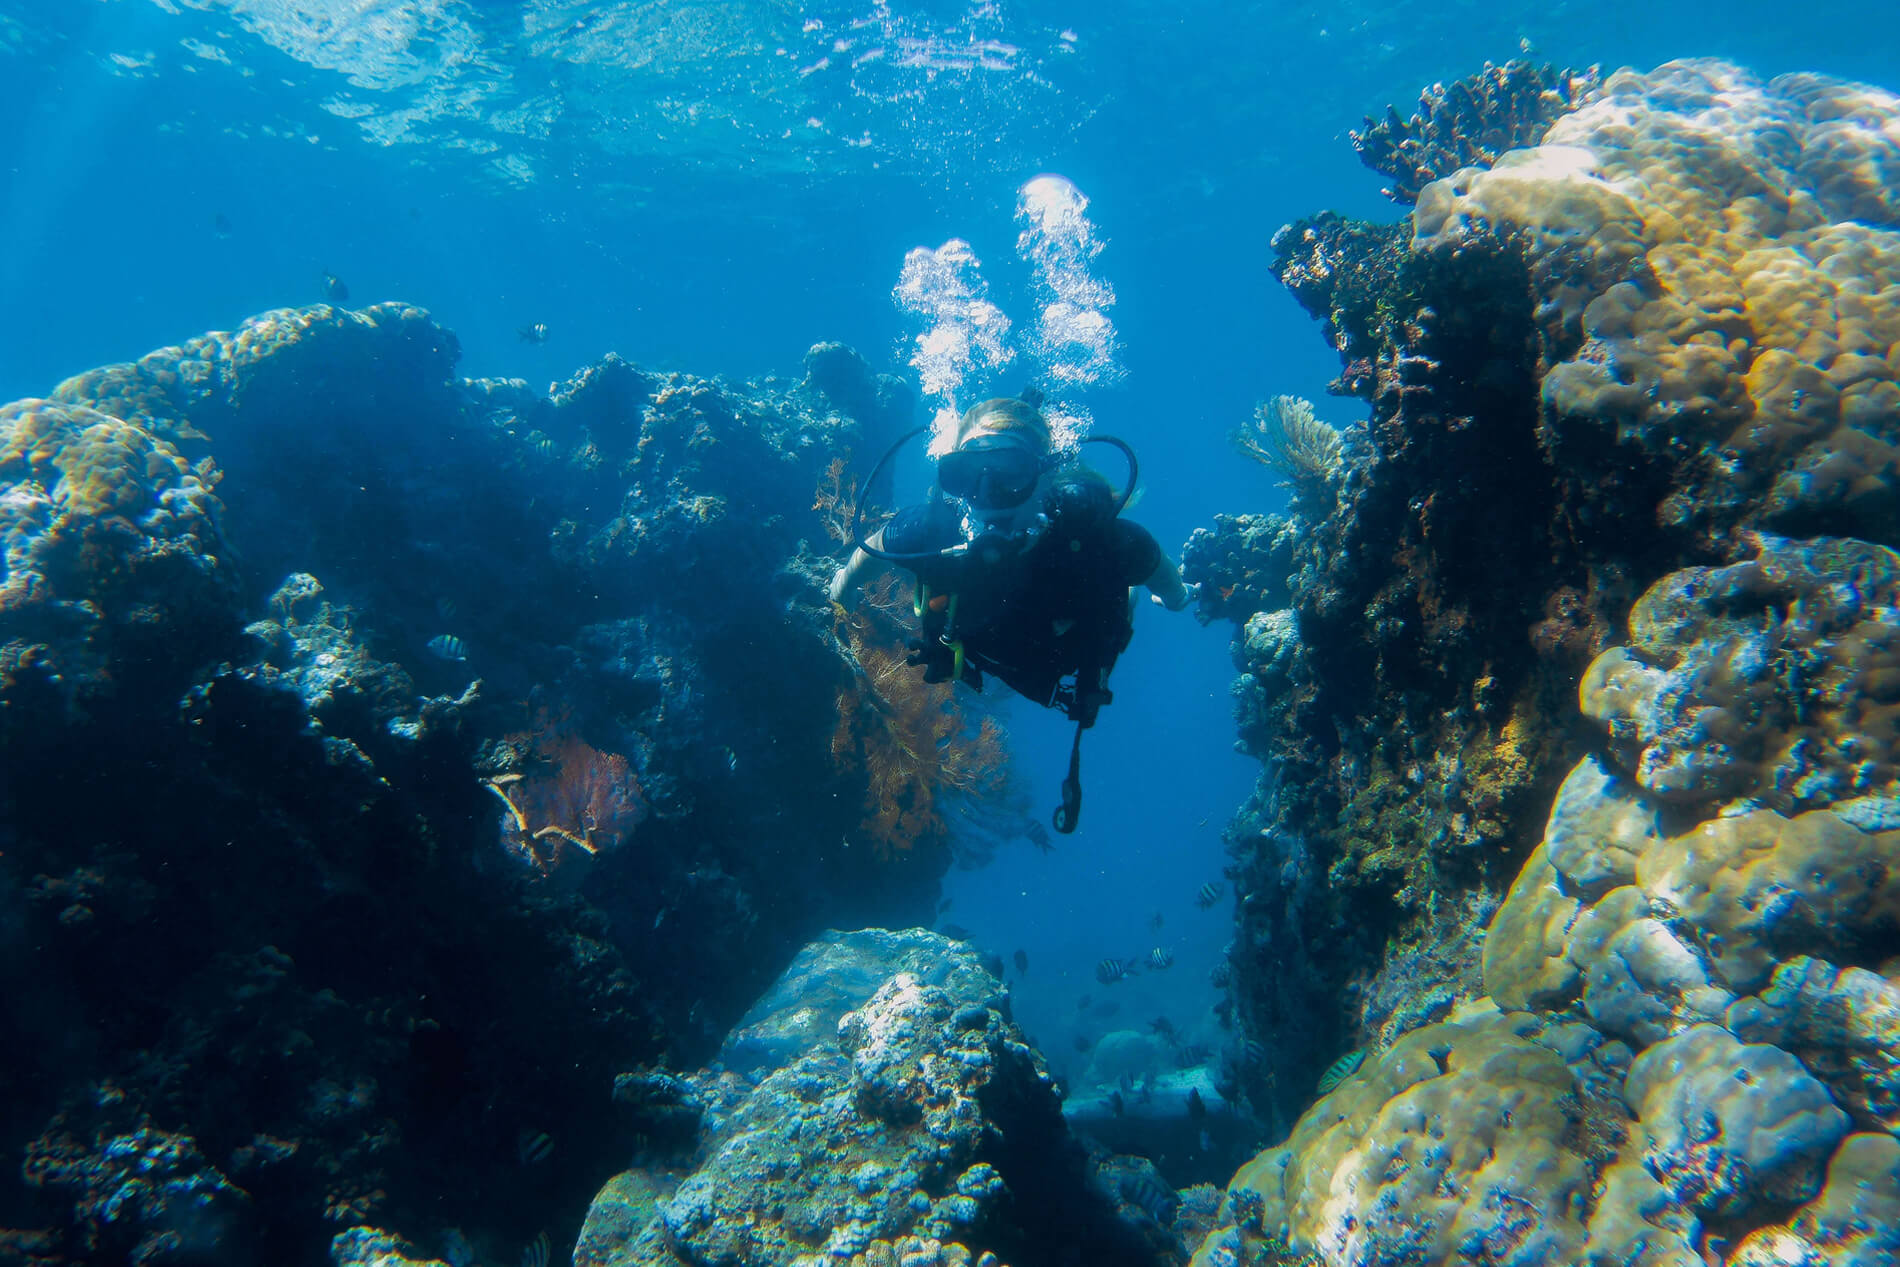 Jardin-corail-poissons-fantomes-Amed-Bali-Indonesie-La revue de Kathleen-Blog-Lifestyle-voyage-Paris